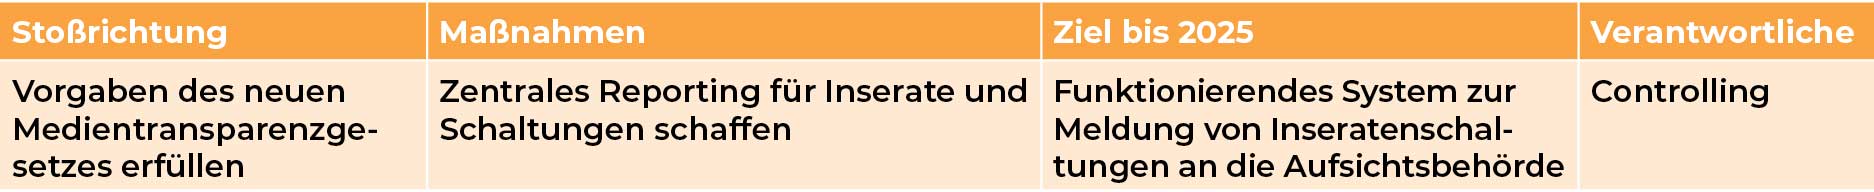 Mediengruppe Wiener Zeitung Nachhaltigkeitsbericht 2023 - mgwznb_cg_korruptionsvermeidung